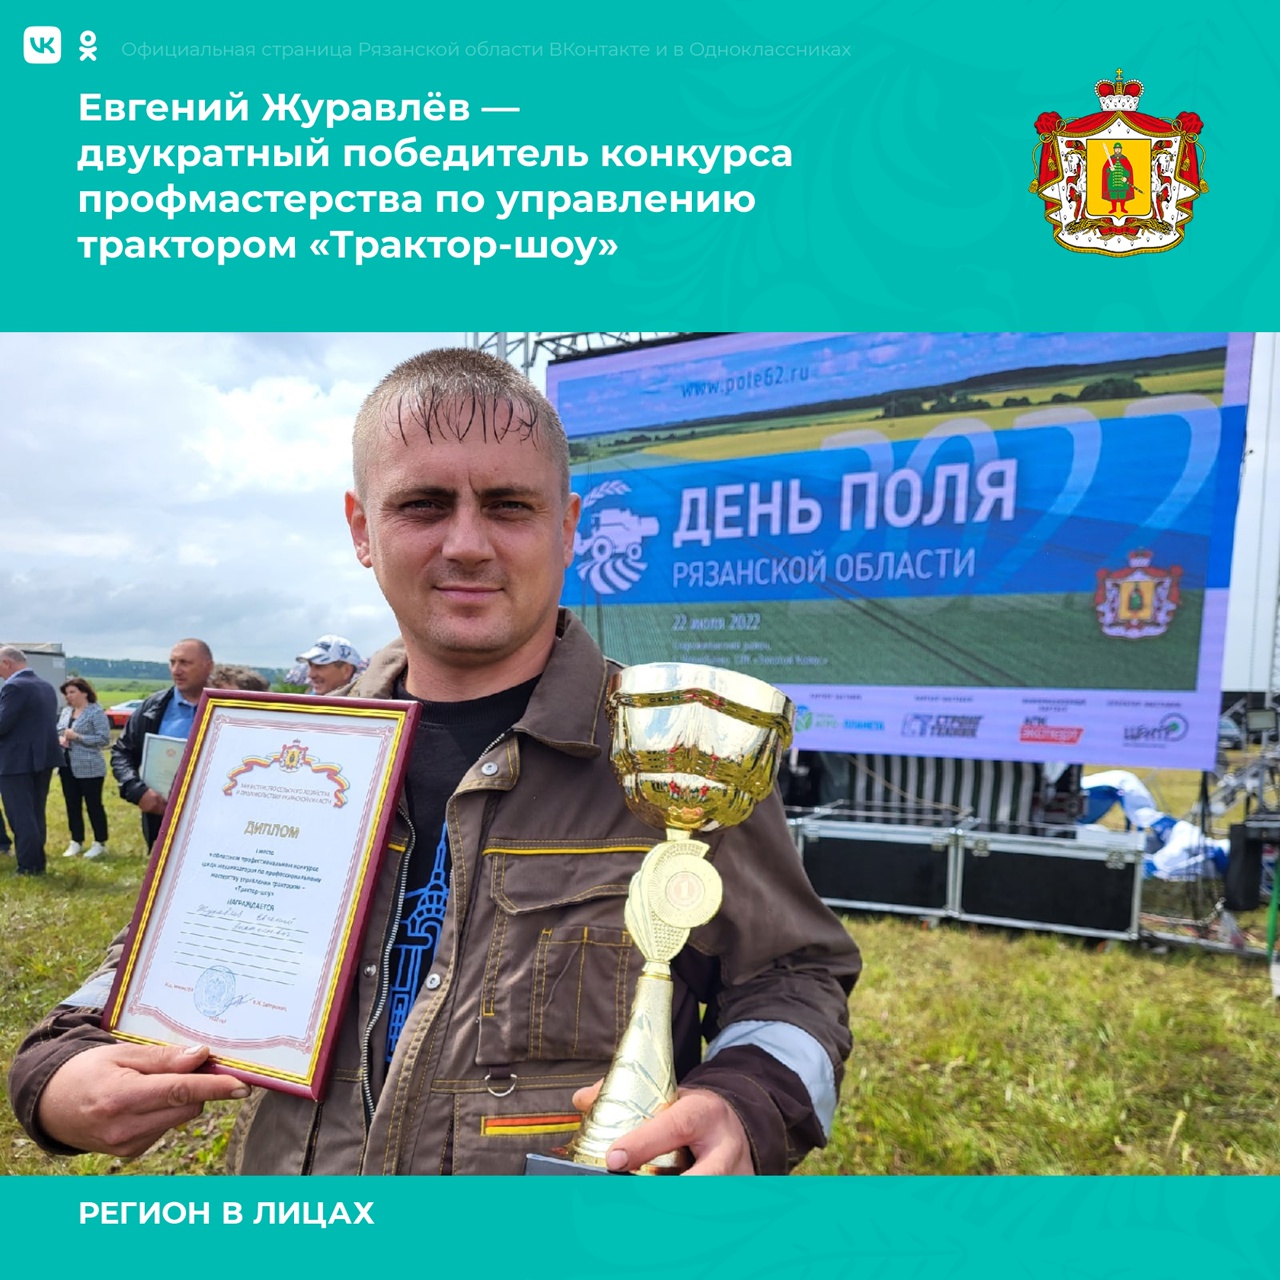 «День поля Рязанской области» завершился в Старожиловском районе